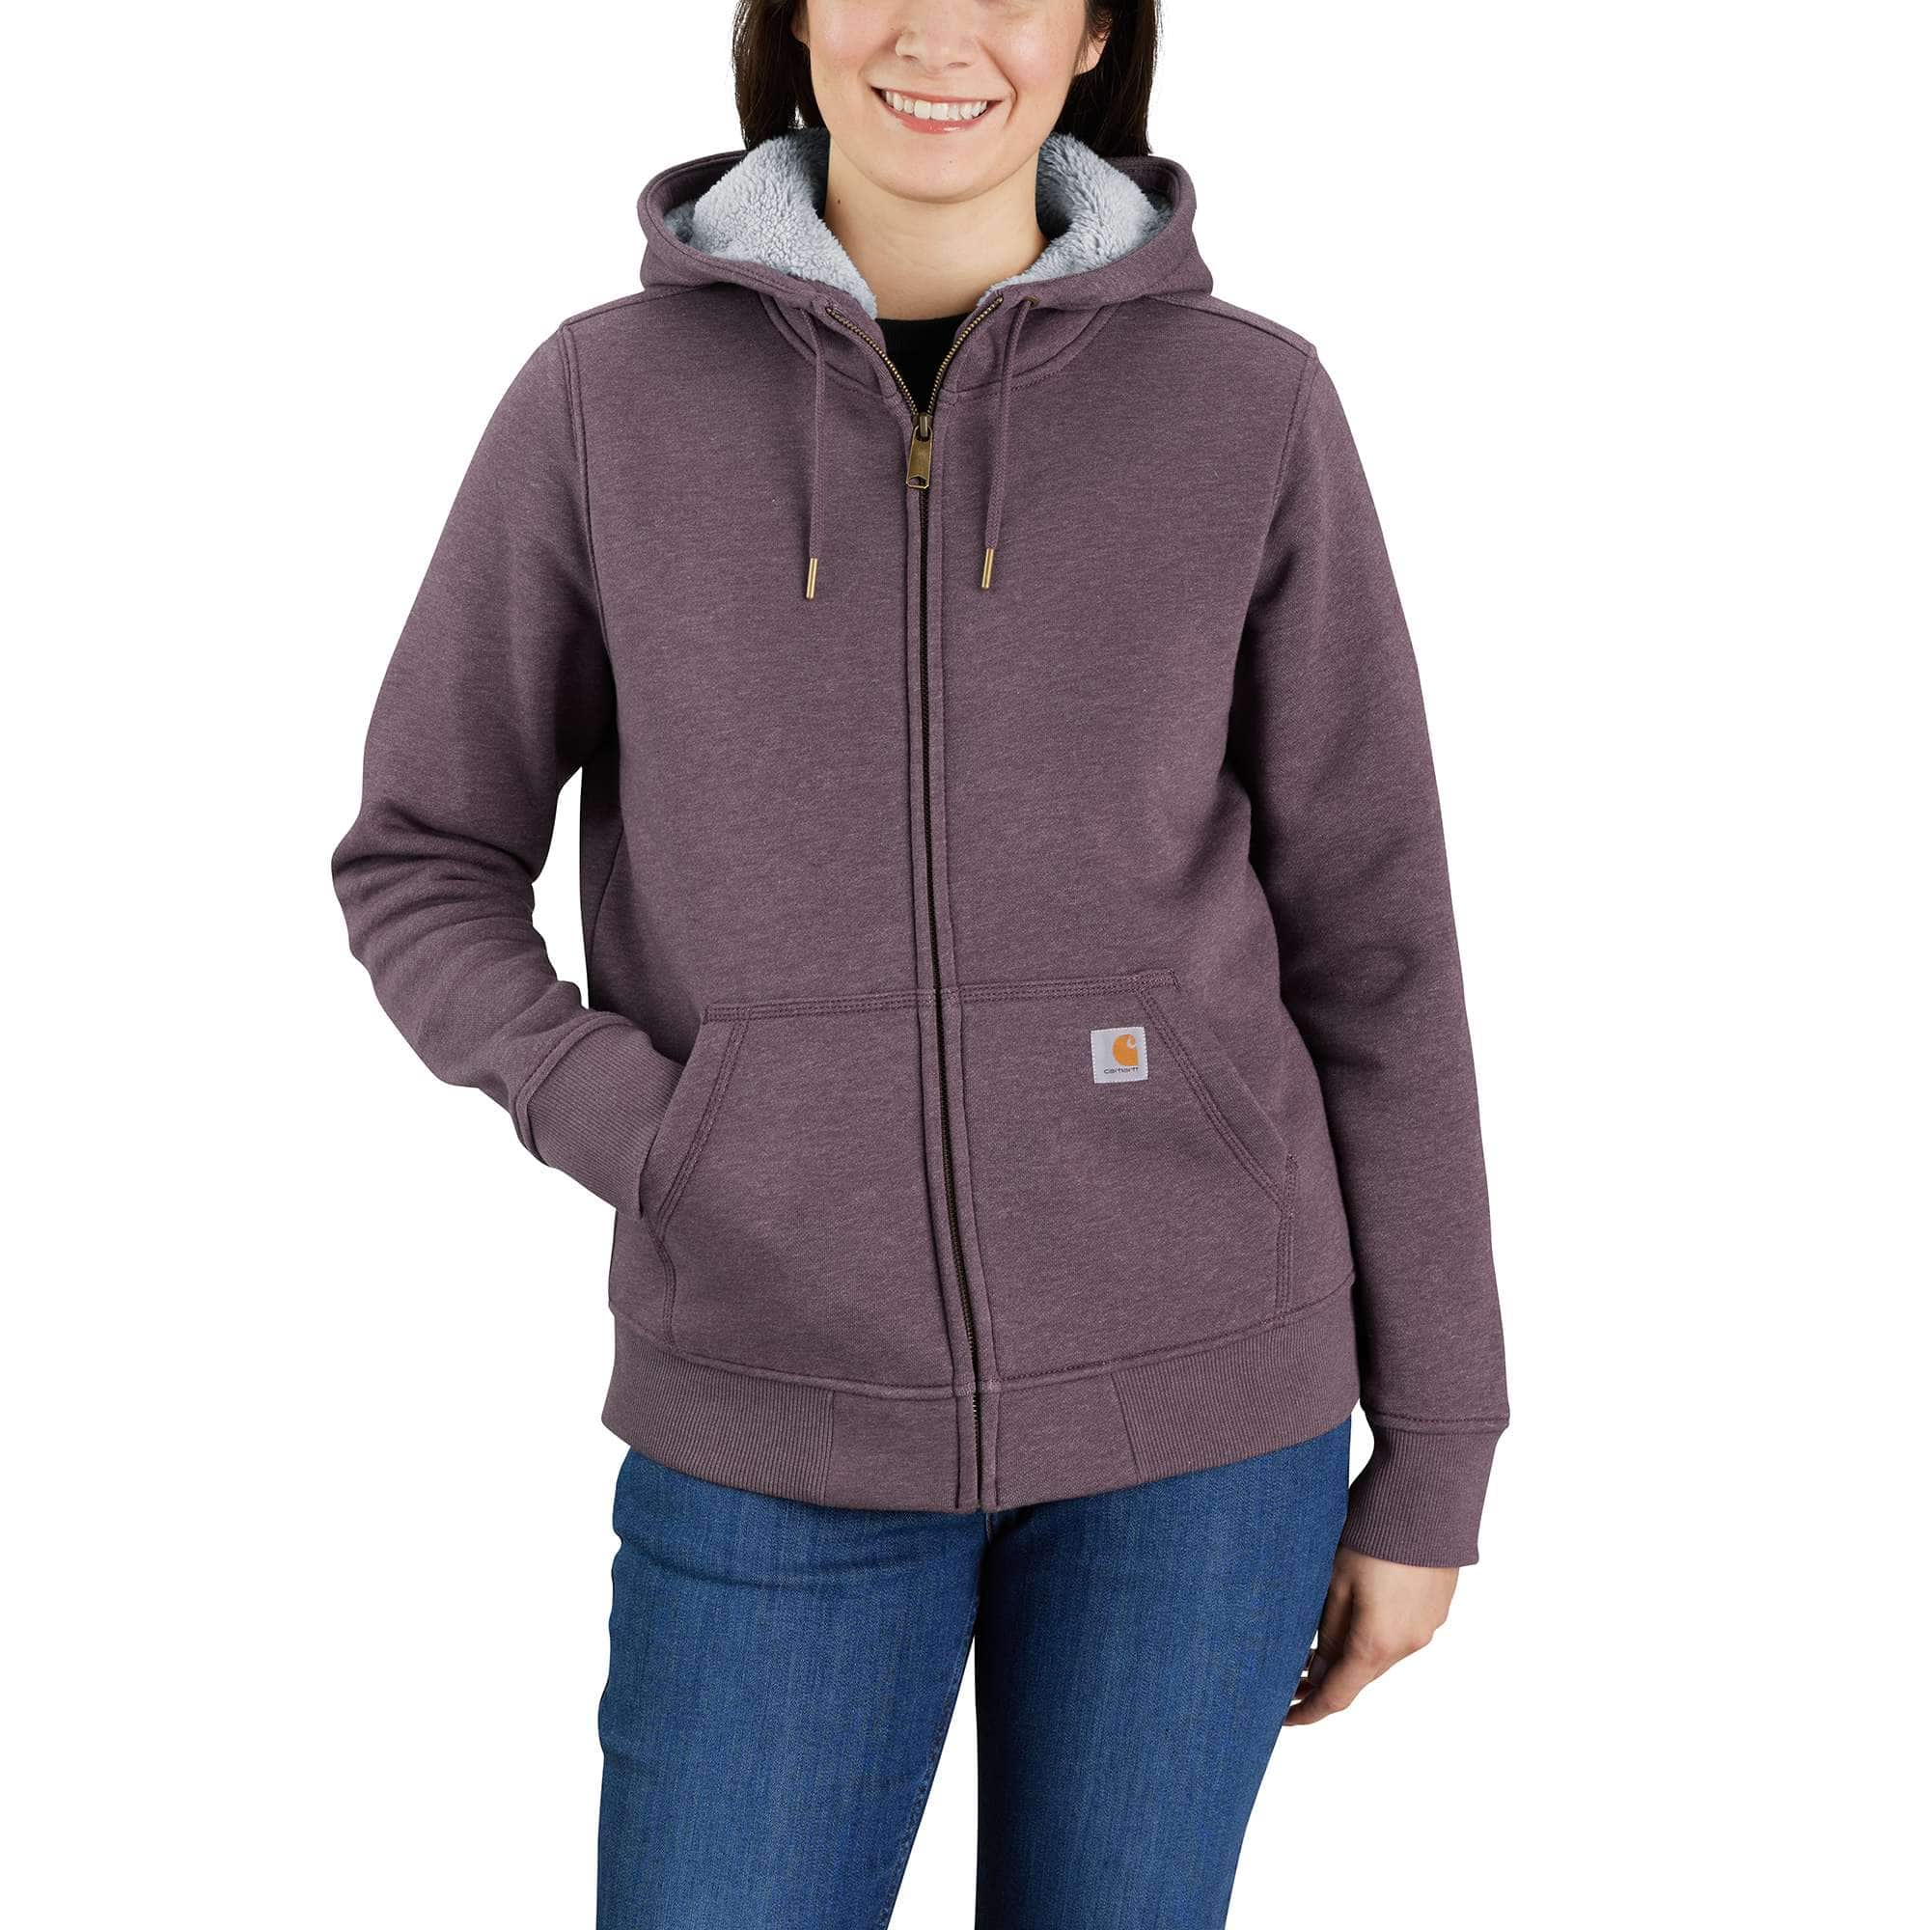 Full Zip Hoodies & Sweatshirts for Women | Carhartt